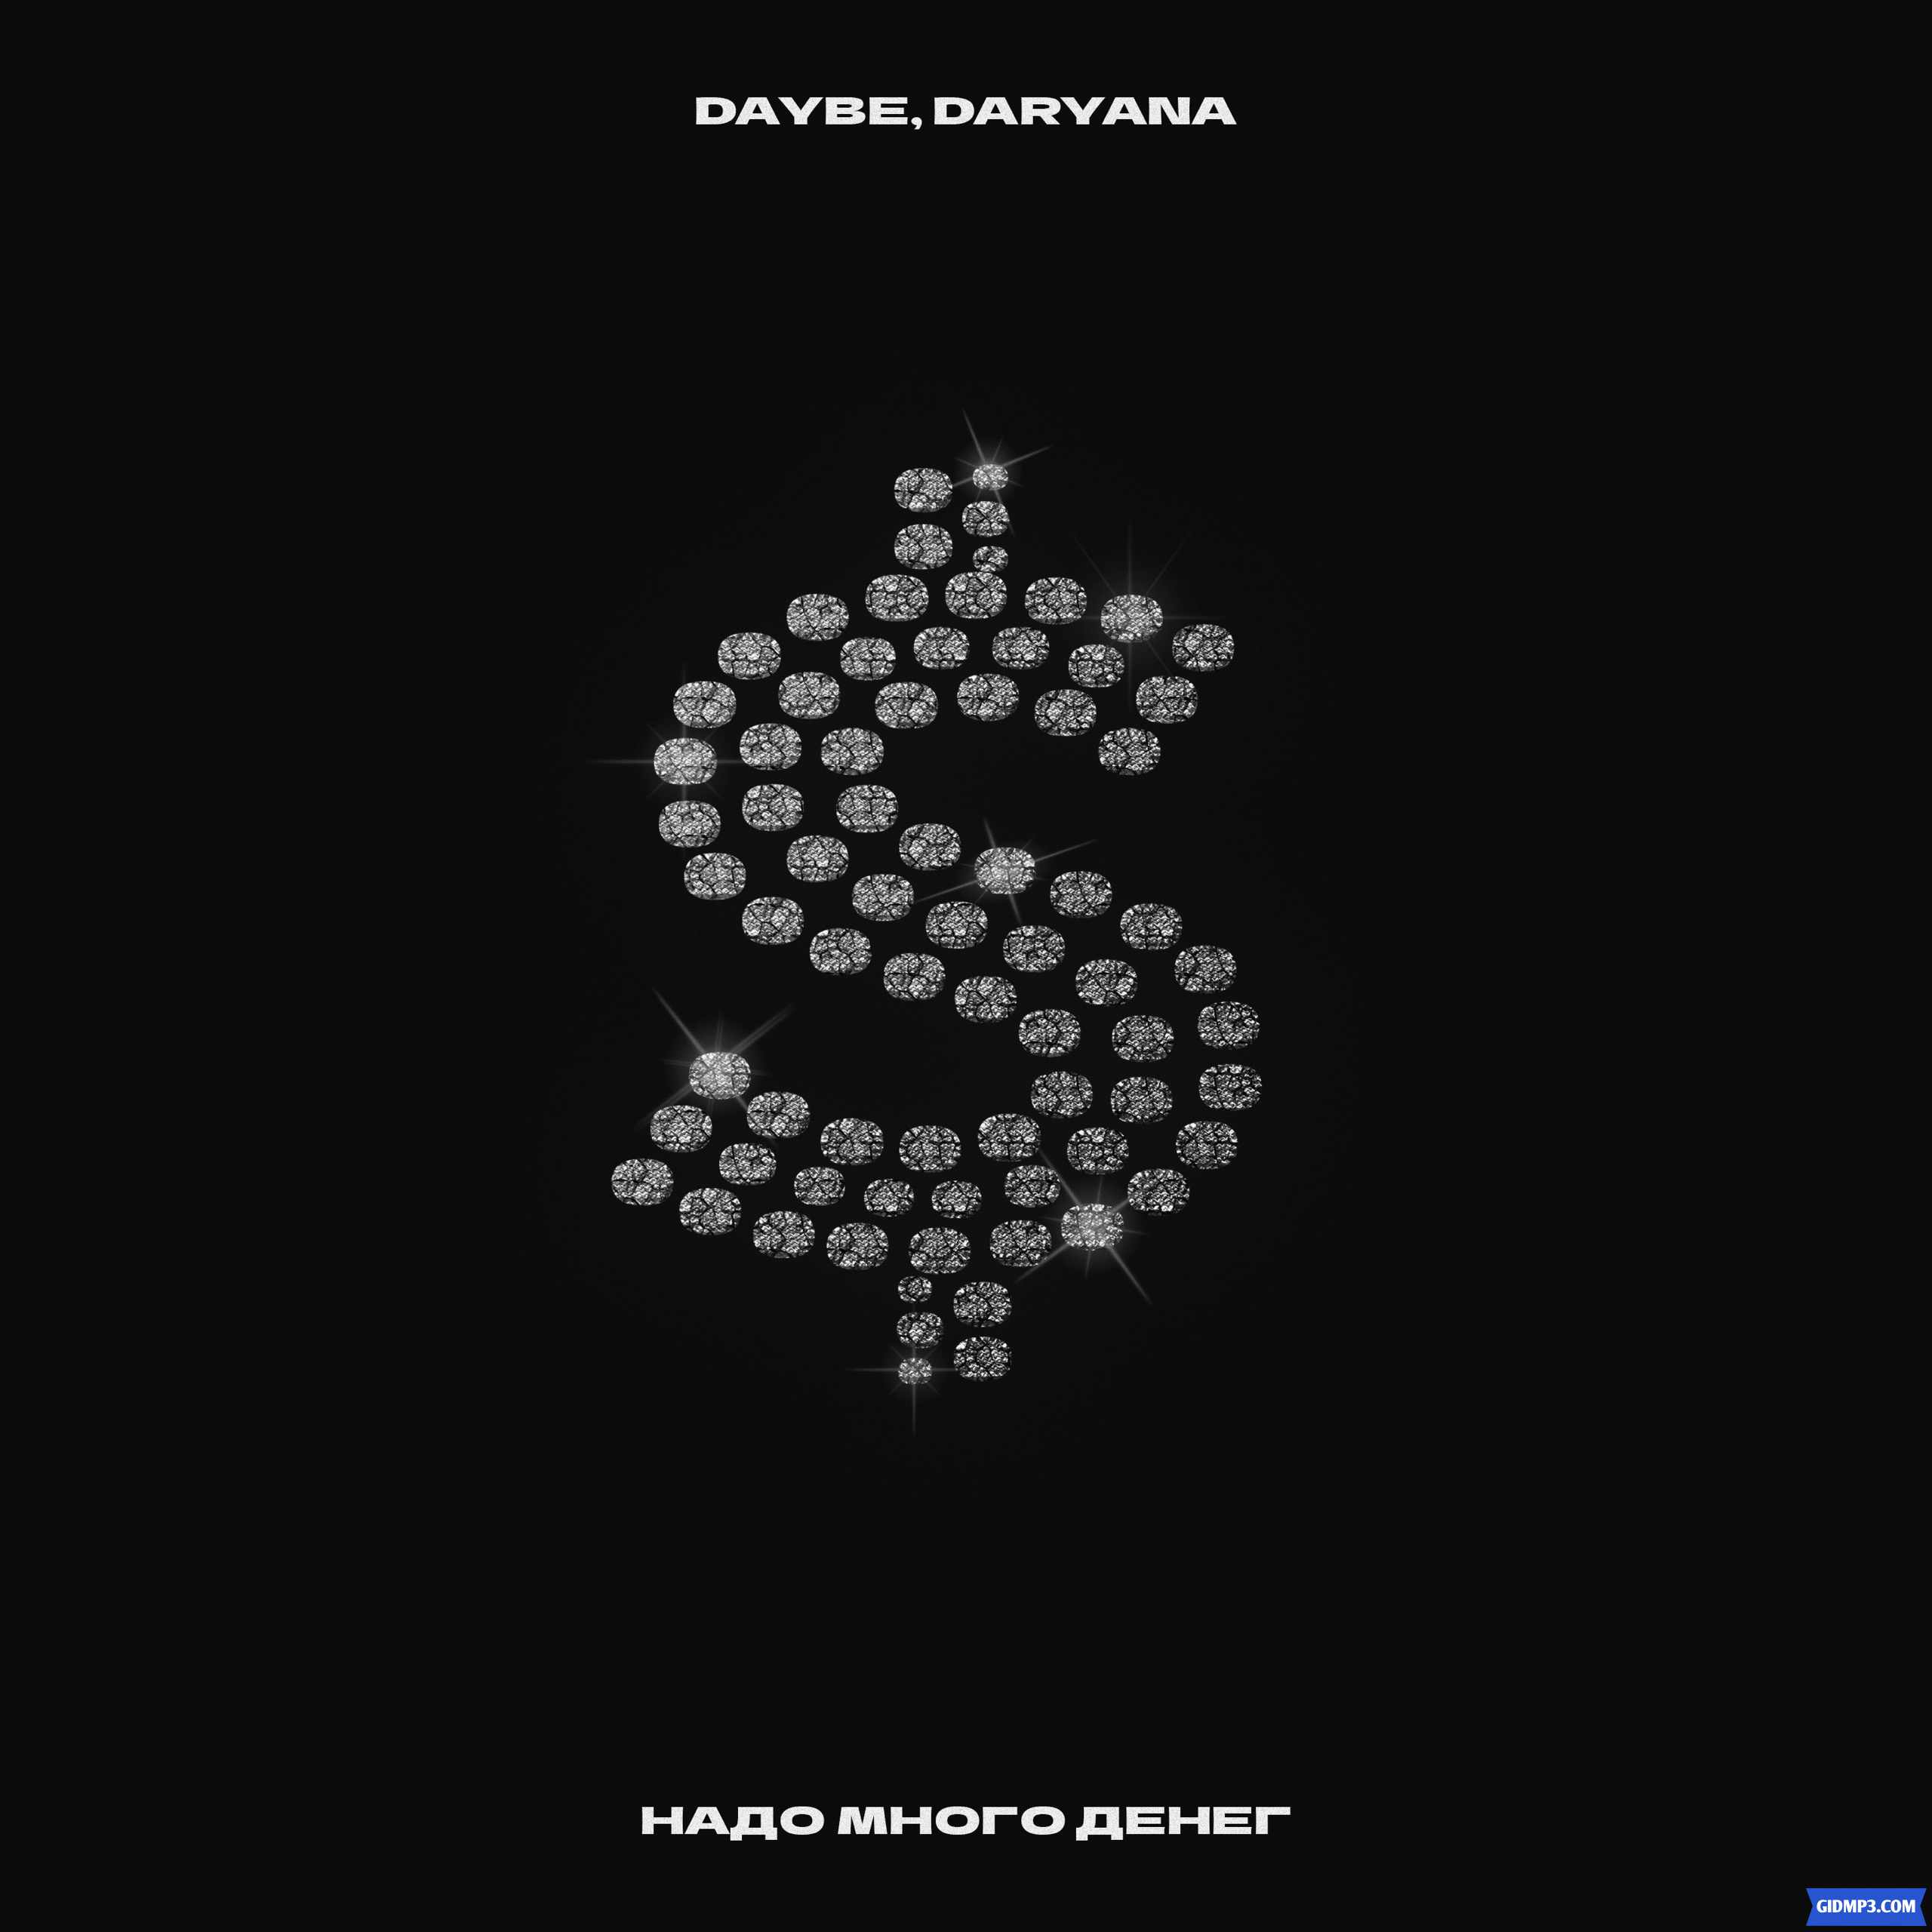 Песня juicy daryana. Надо много денег Daybe. Daryana Daybe. Daryana Daybe фото.